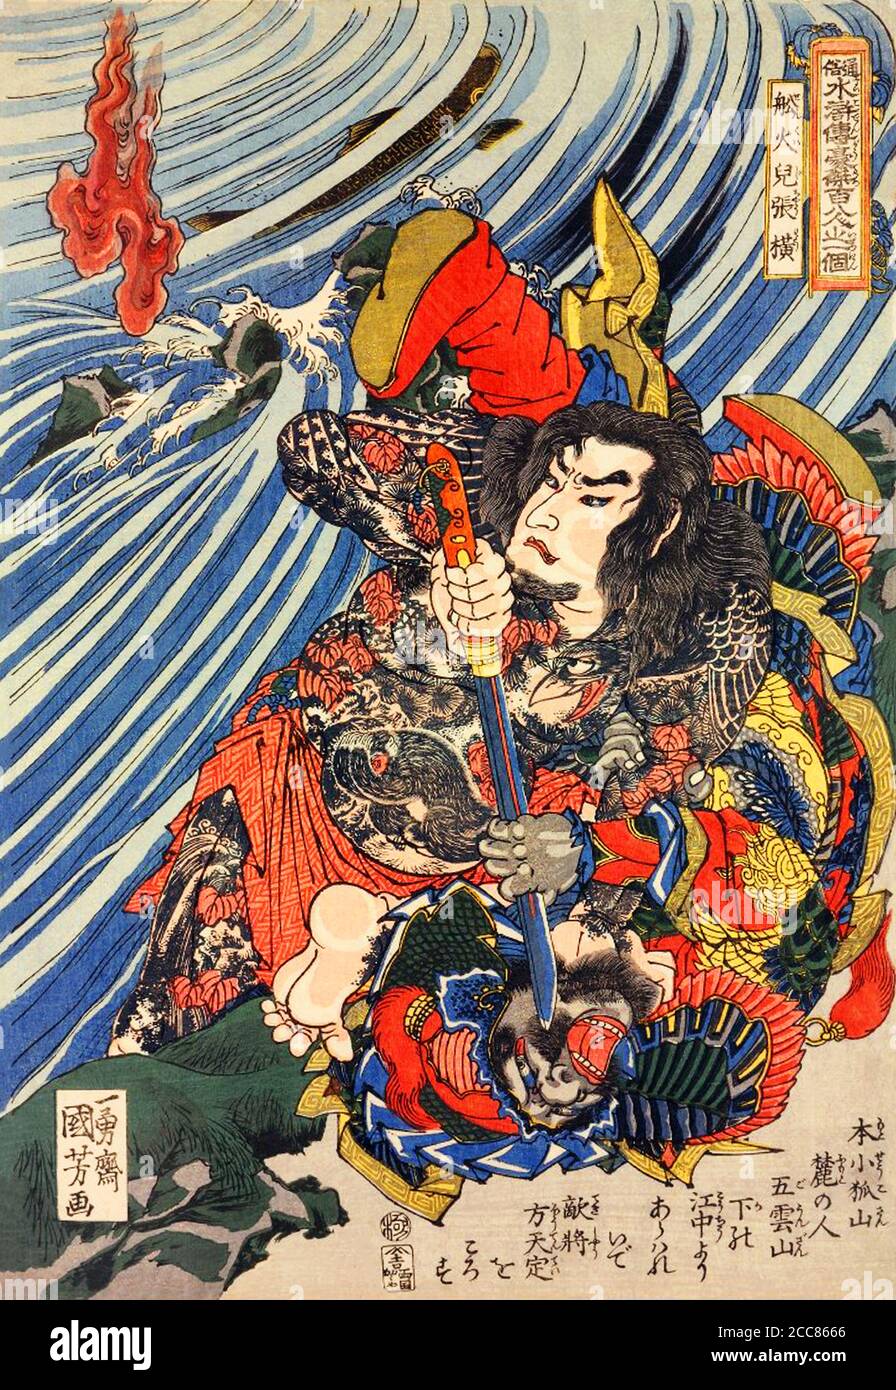 Japan: Zhang Heng oder Senkaji Choo, einer der "Hundert und Acht Helden des Wasserrandes", entkleidet, um seine Ganzkörper-Tattoos zu enthüllen, die den feindlichen General Hotentei mit seinem Schwert töten, blickt zurück auf eine übernatürliche Flamme, die hinter ihm über dem Fluss auftaucht. Holzschnitt von Utagawa Kuniyoshi (1797-1863), 1827-1830. Der Wasserrand (im Chinesischen als Shuihu Zhuan bekannt, manchmal abgekürzt zu Shuihu, im Japanischen als Suikoden bekannt, sowie Outlaws des Marschs, Tale of the Marshes, All Men are Brothers, Men of the Marshes, oder die Mooren des Mount Liang in Englisch, ist ein 14. Jahrhundert Stockfoto